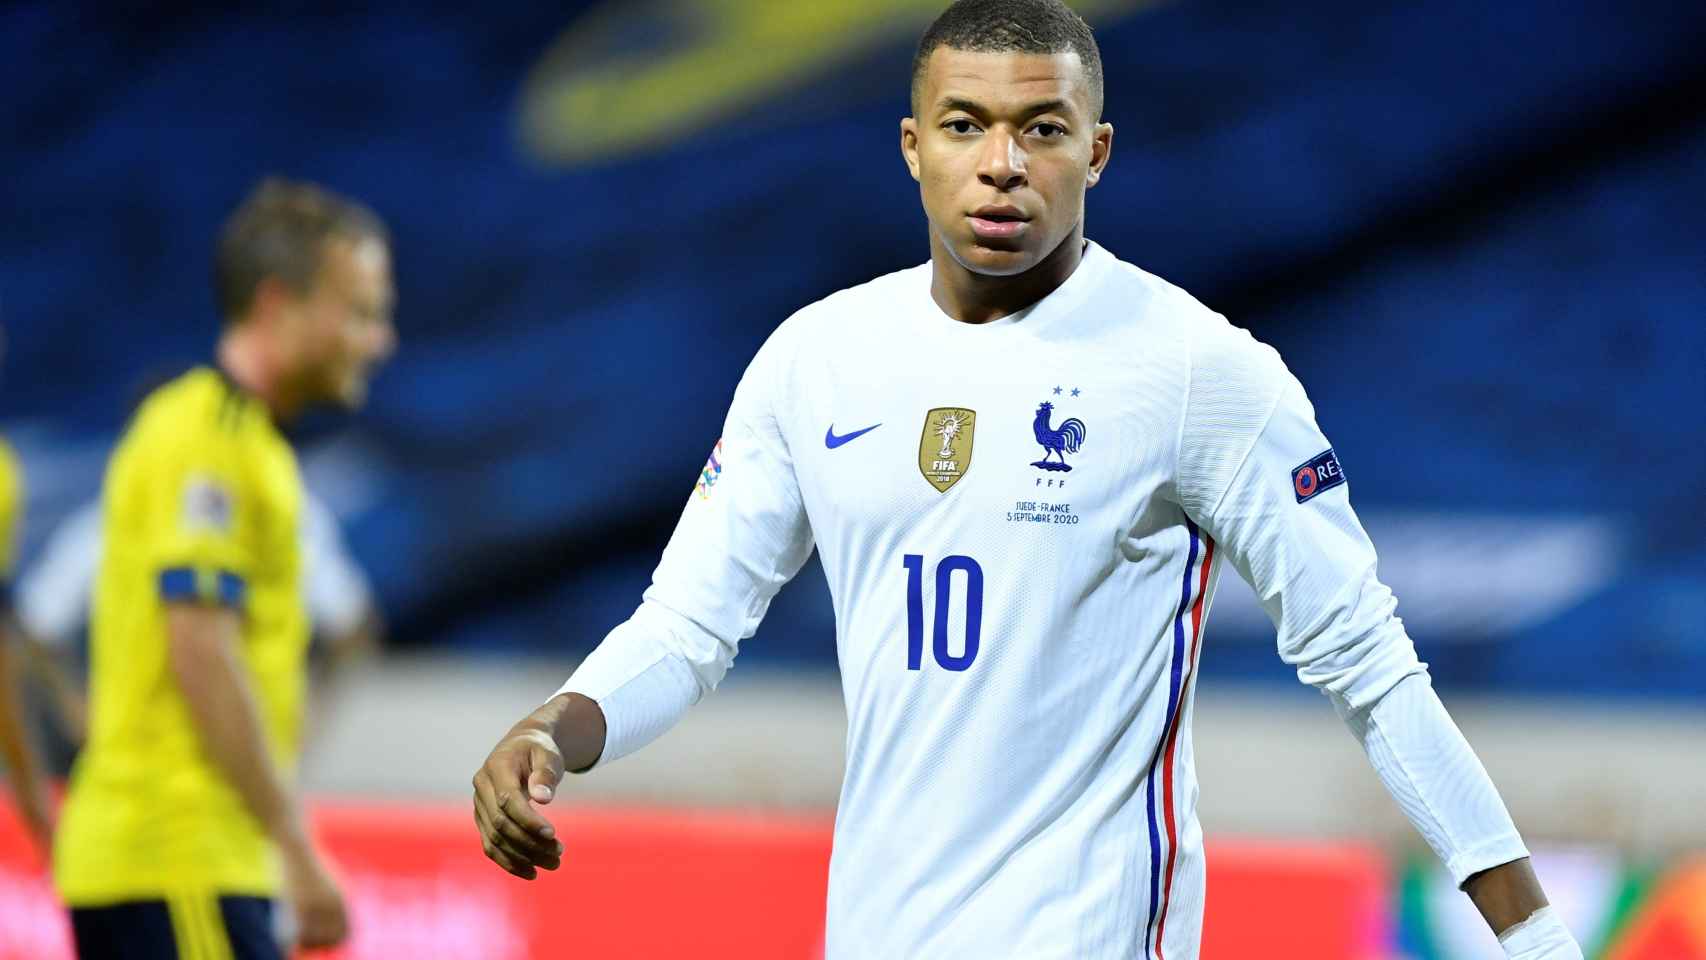 Mbappé da positivo por la Covid-19: abandona selección de Francia tras jugar el sábado